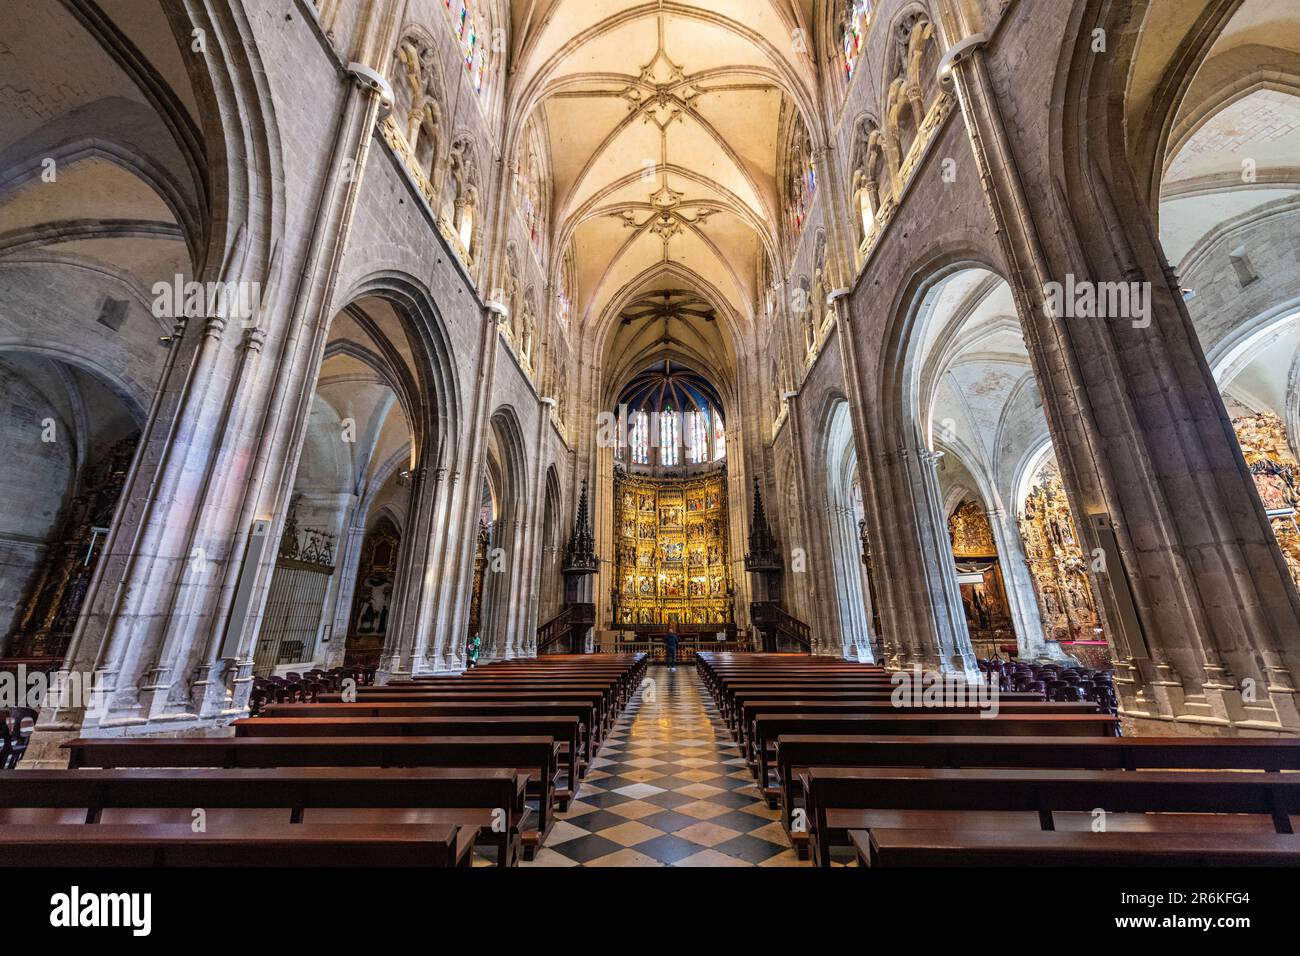 Intérieur de la cathédrale de San Salvador, Oviedo, site du patrimoine mondial de l'UNESCO, Asturies, Espagne, Europe Banque D'Images